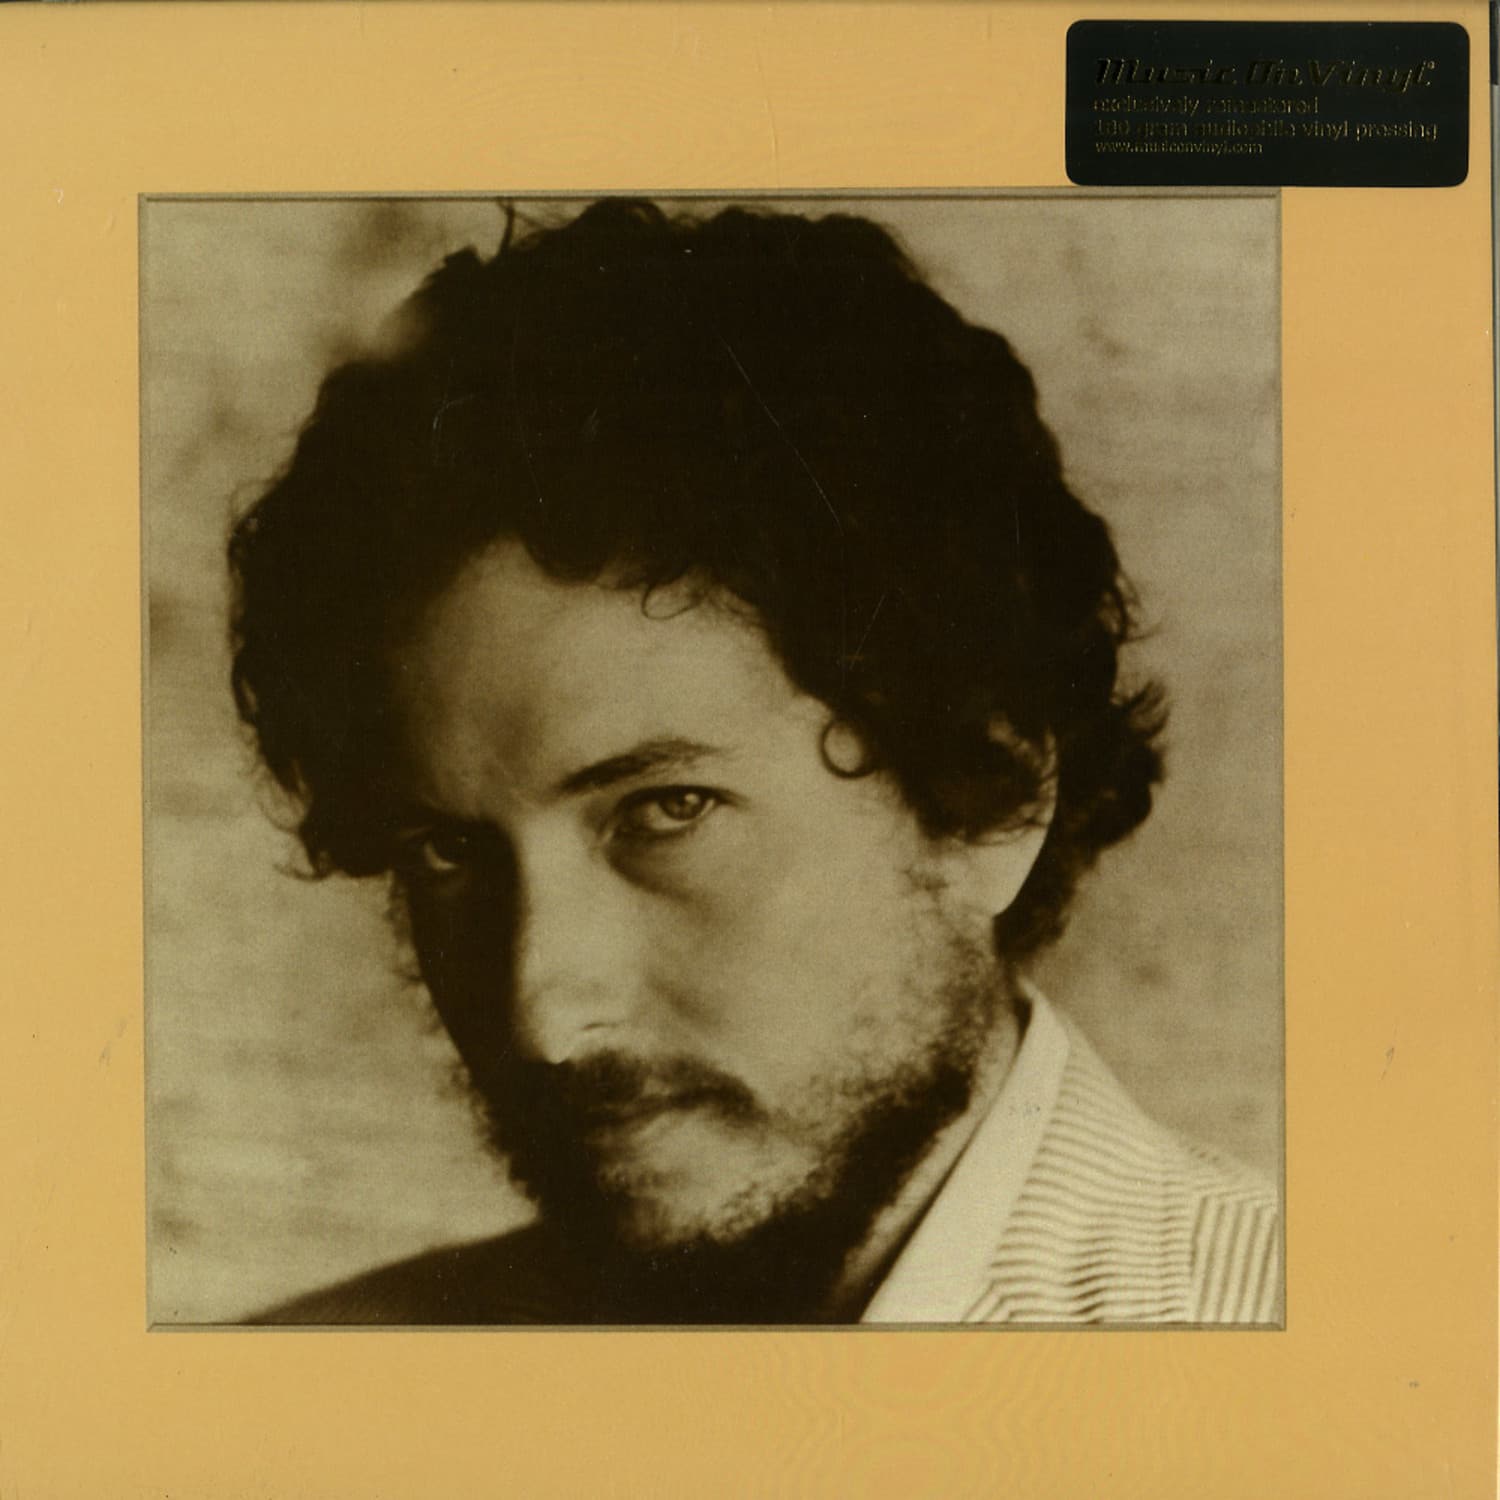 Bob Dylan - NEW MORNING 